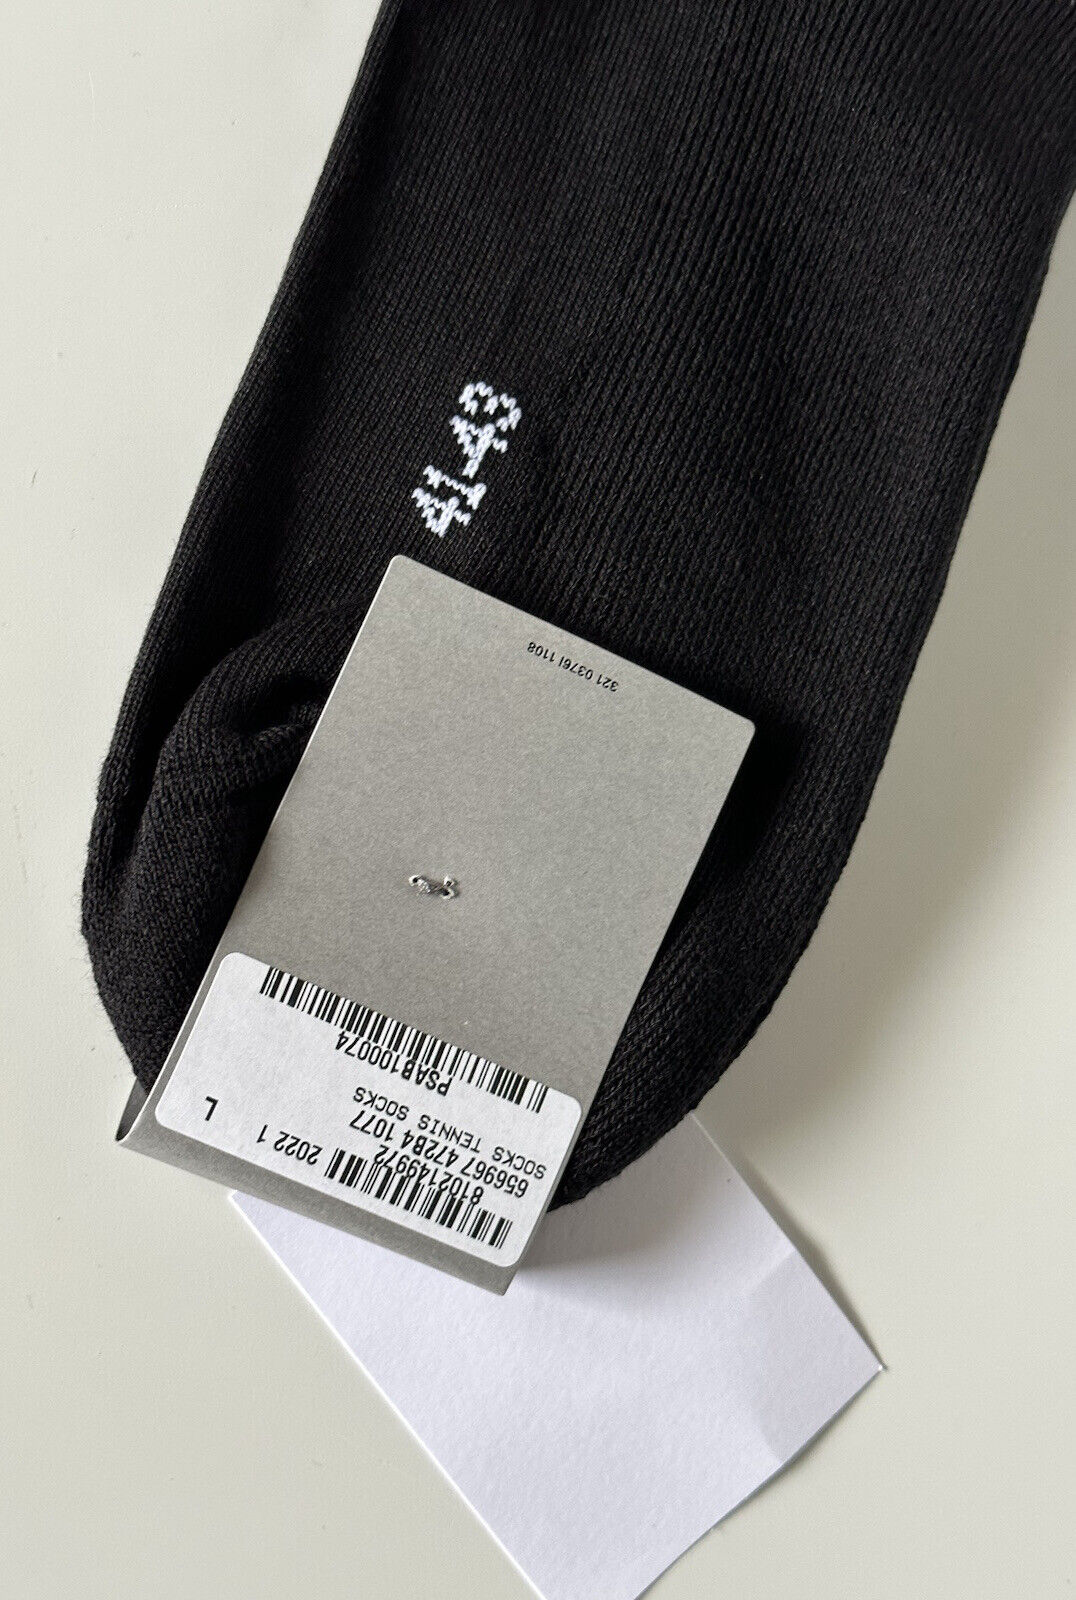 NWT 150 долларов США Теннисные носки Balenciaga Logo, черные, большие (41–43), сделано в Португалии 